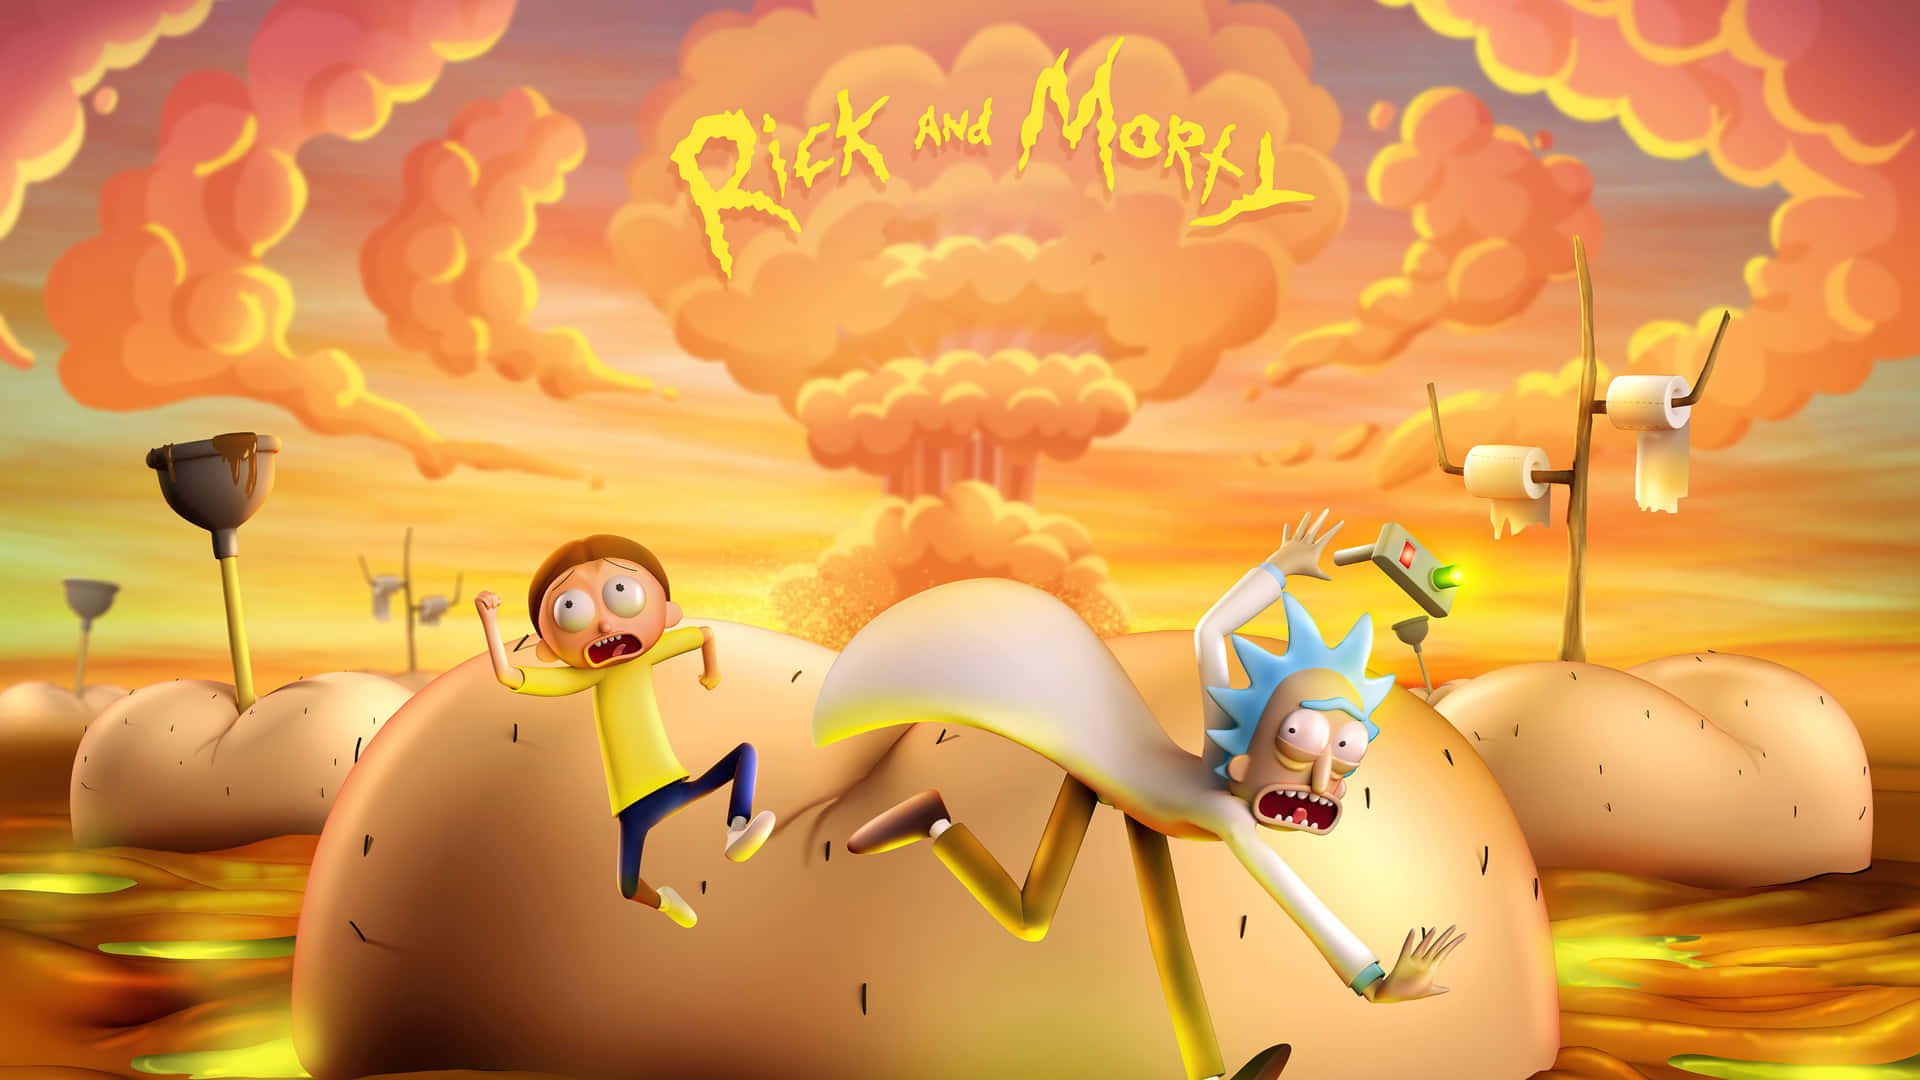 Rickund Morty Hintergrundbilder